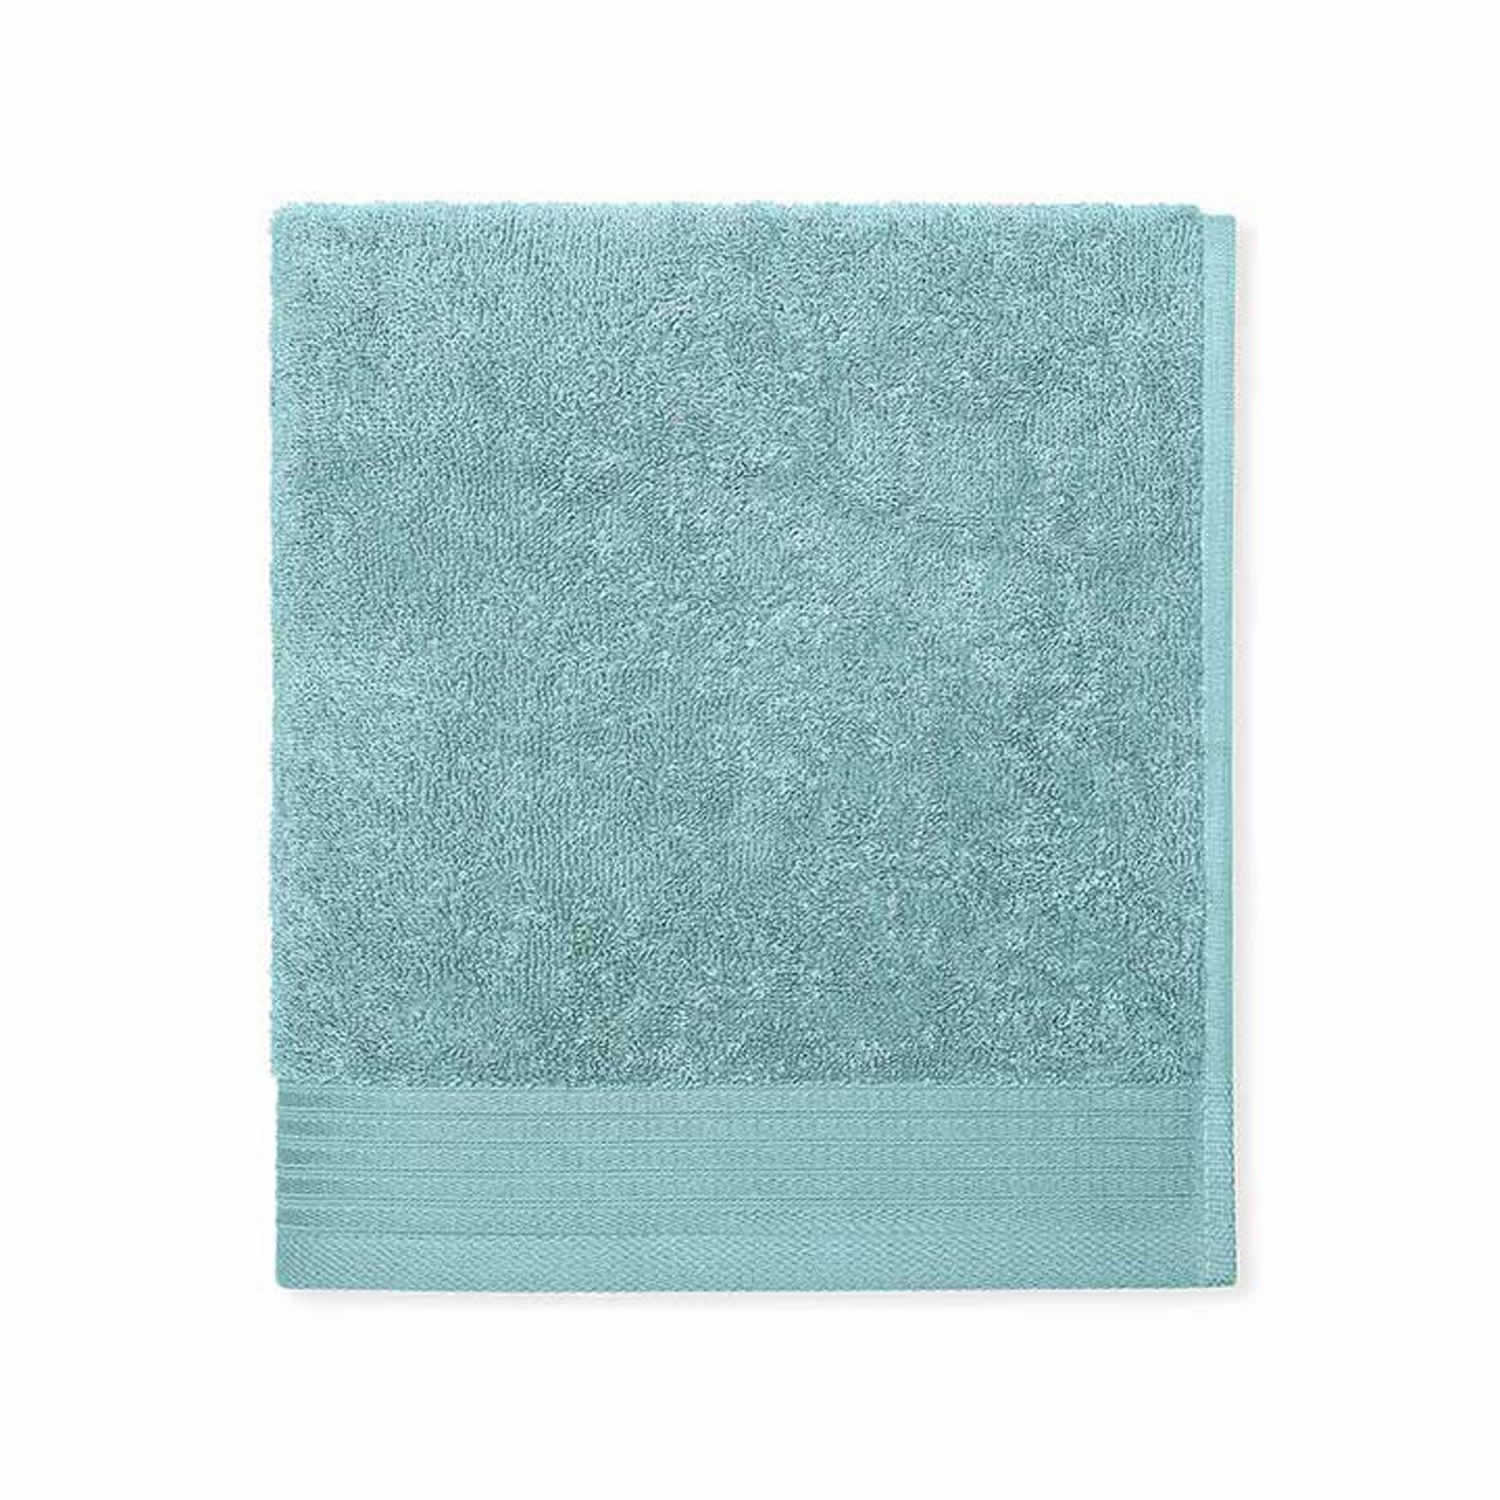 Schlossberg COSHMERE towel - Aqua